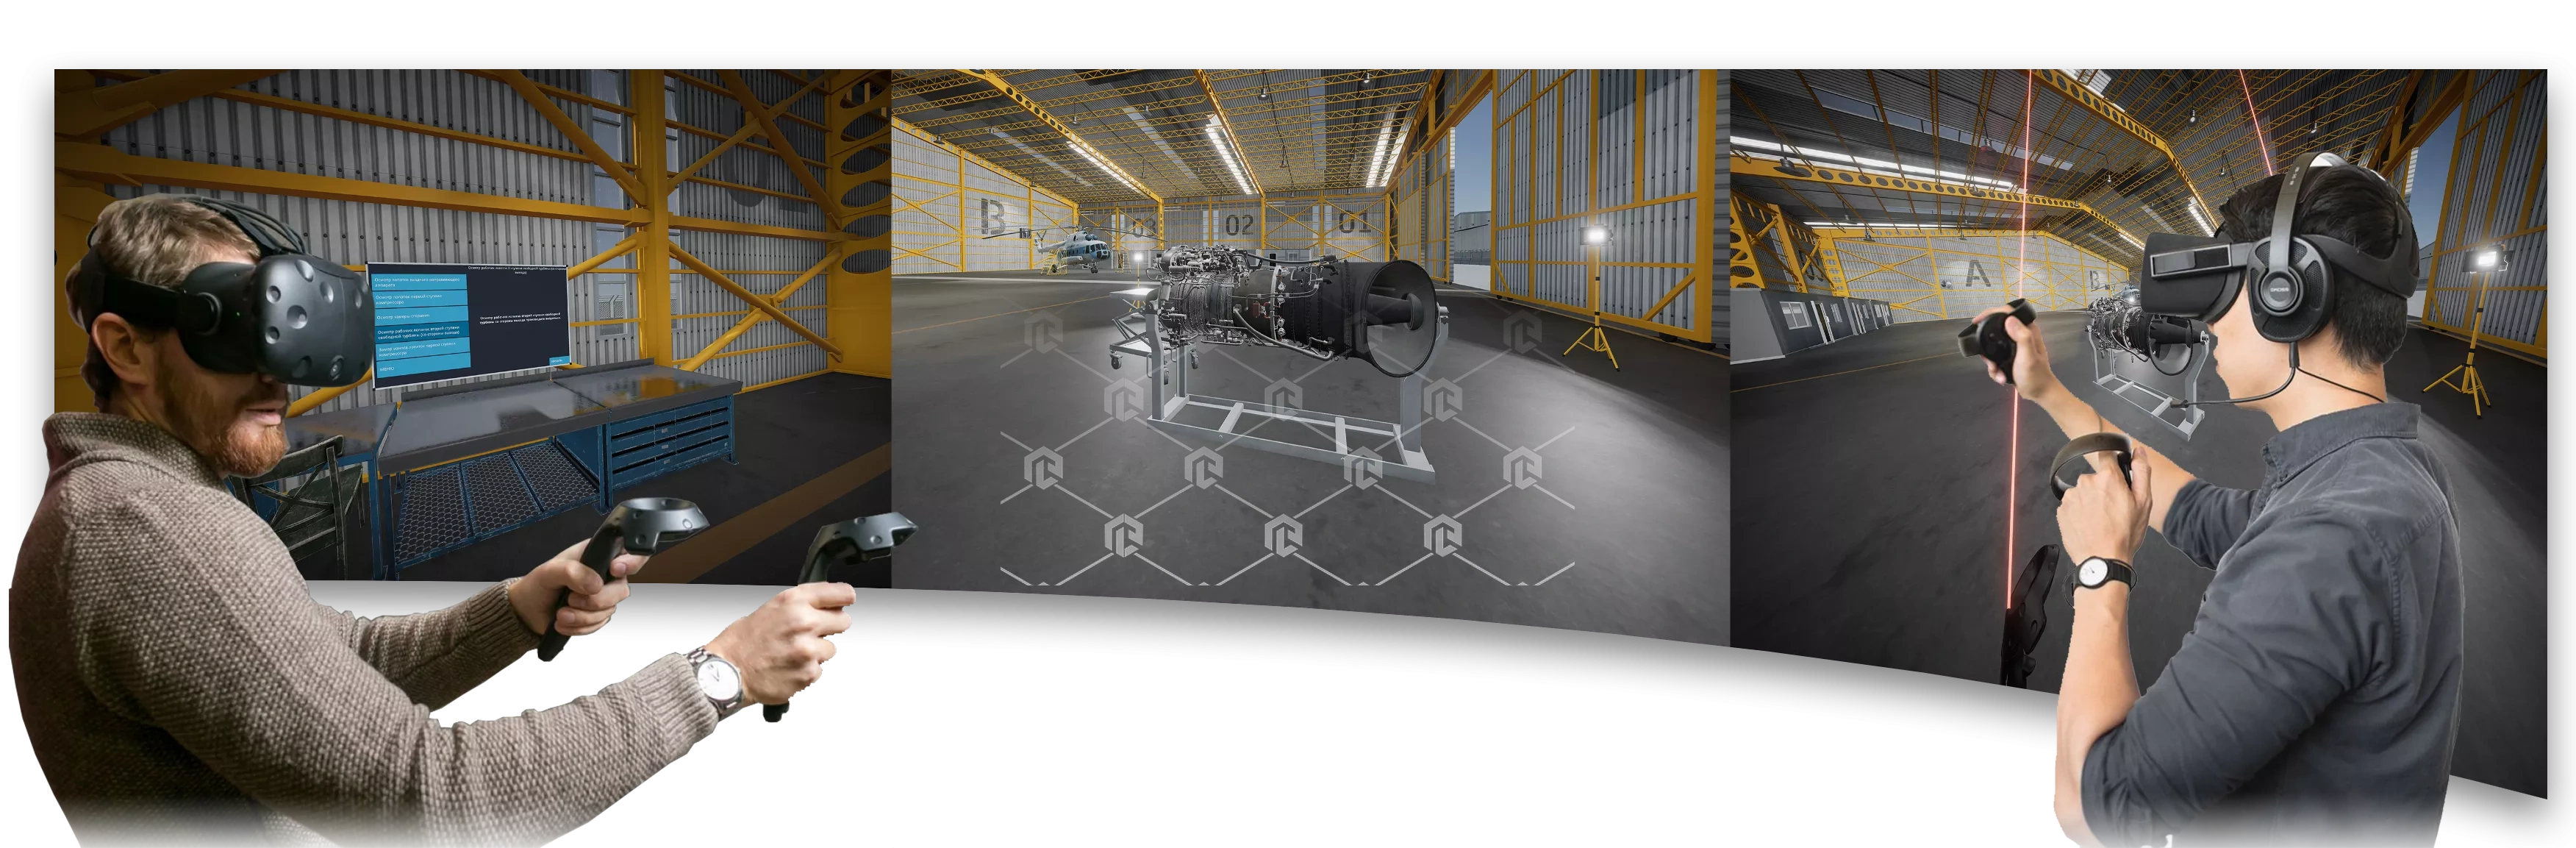 фото Виртуальный учебный комплекс «Лаборатория дефектоскопии и внутреннего неразрушающего контроля турбовального двигателя вертолета ТВ3-117»